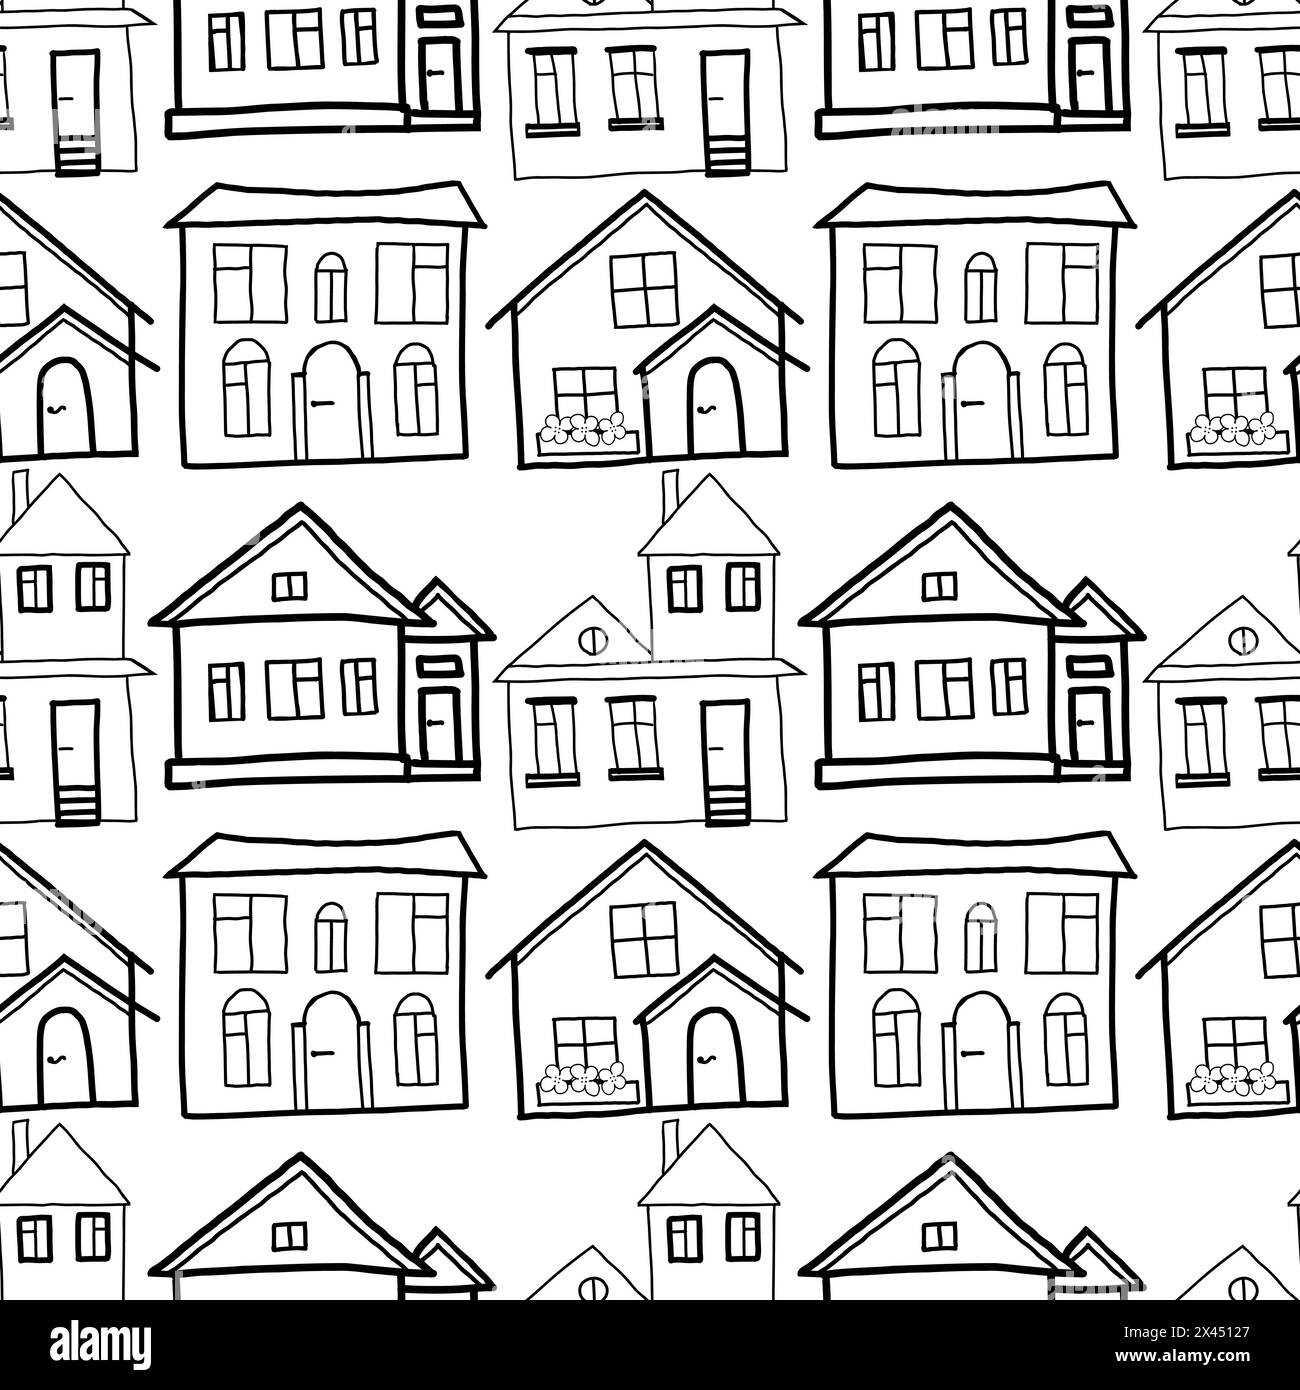 Pattern vettoriale senza giunture. Edifici residenziali disegnati a mano su un tablet in nero. Case private con grandi finestre, aiuole, recinzioni. Illustrazione Vettoriale